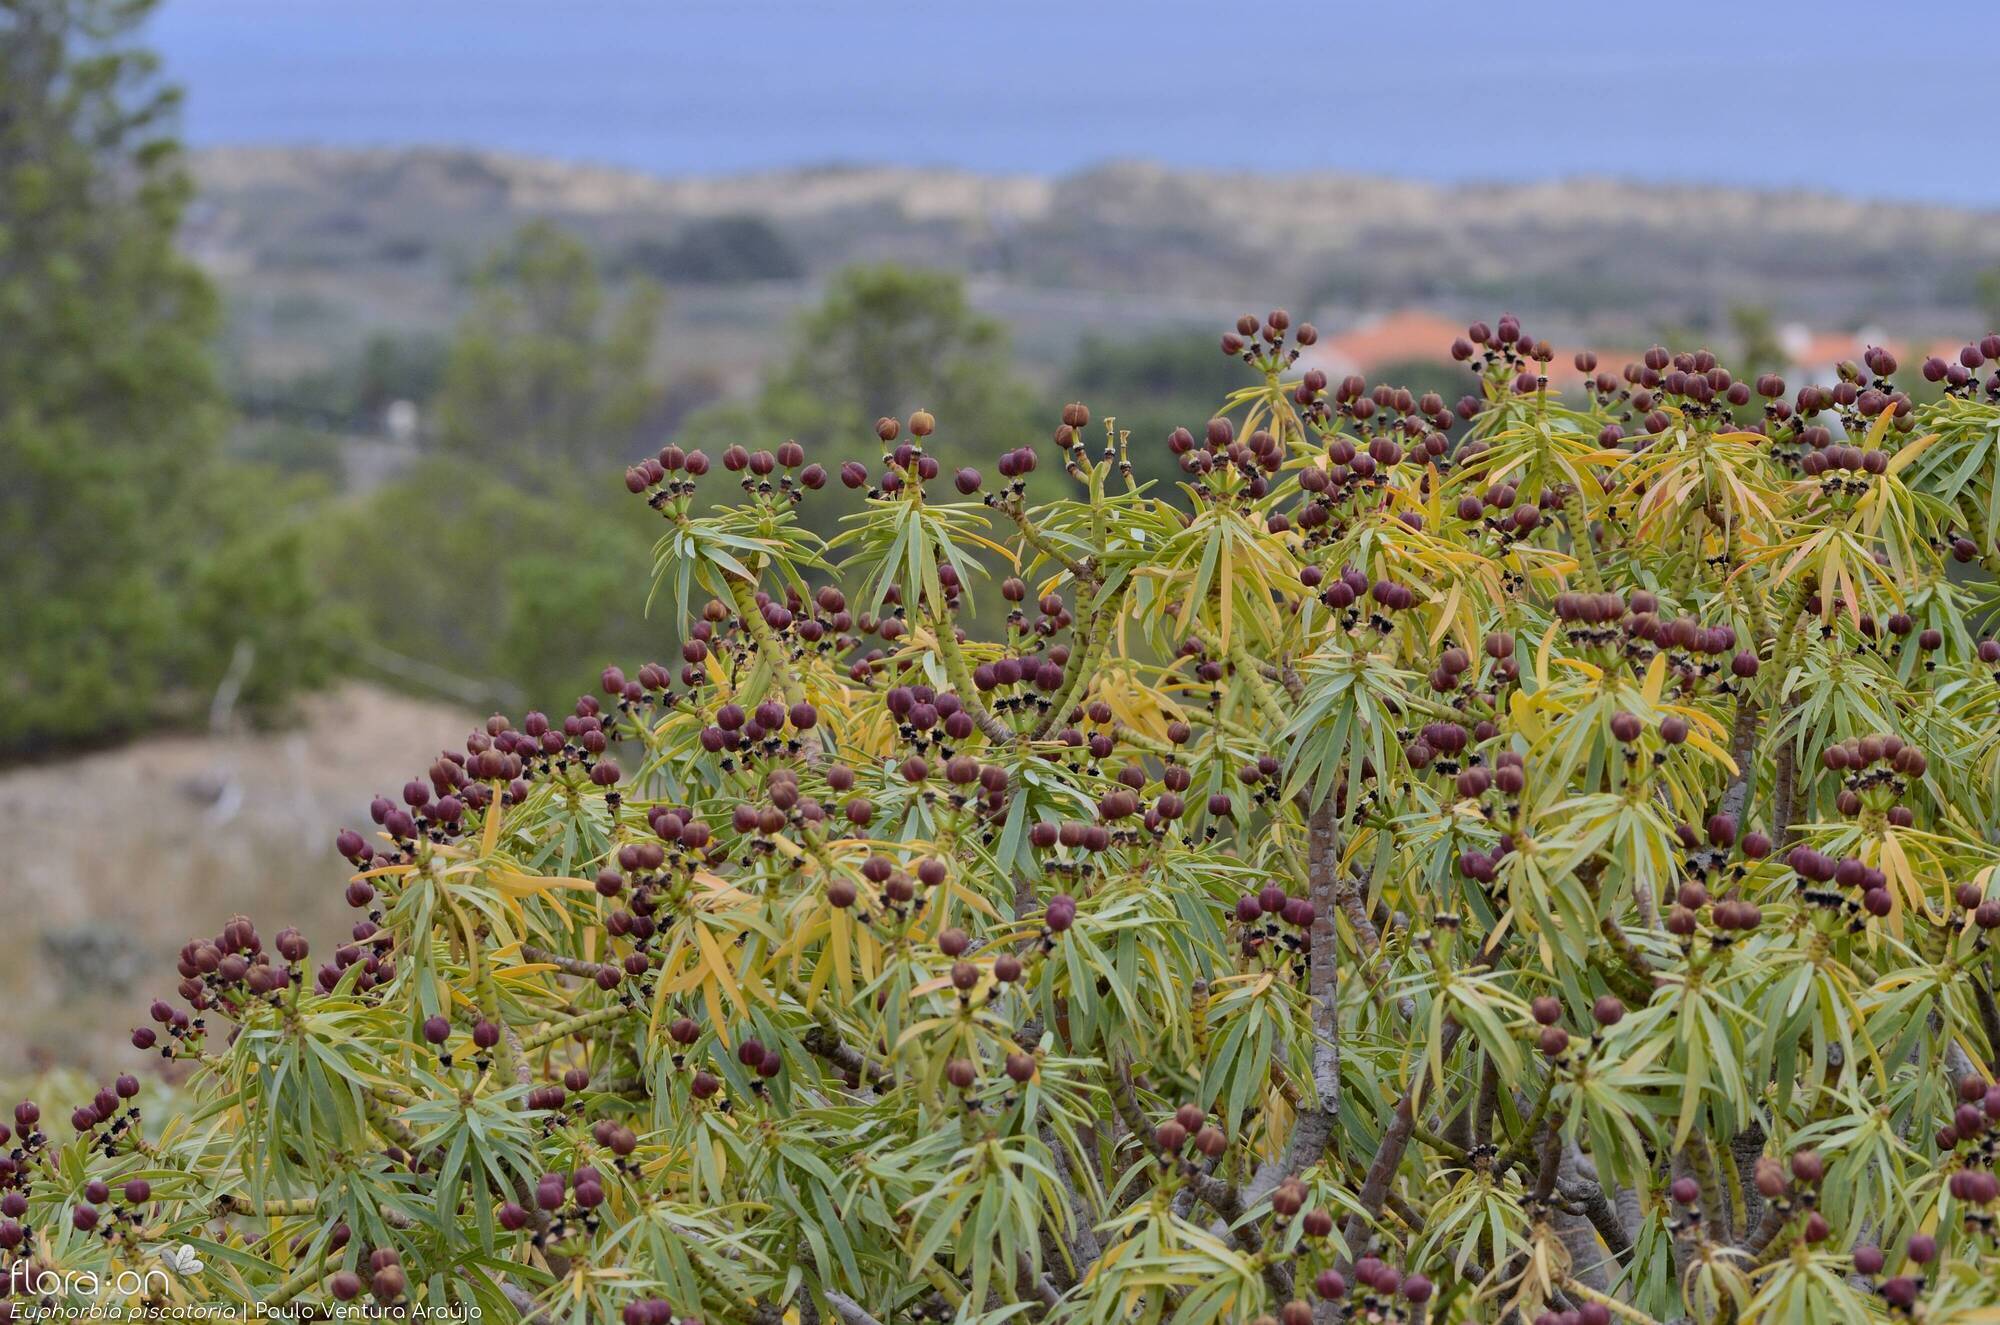 Euphorbia piscatoria - Hábito | Paulo Ventura Araújo; CC BY-NC 4.0